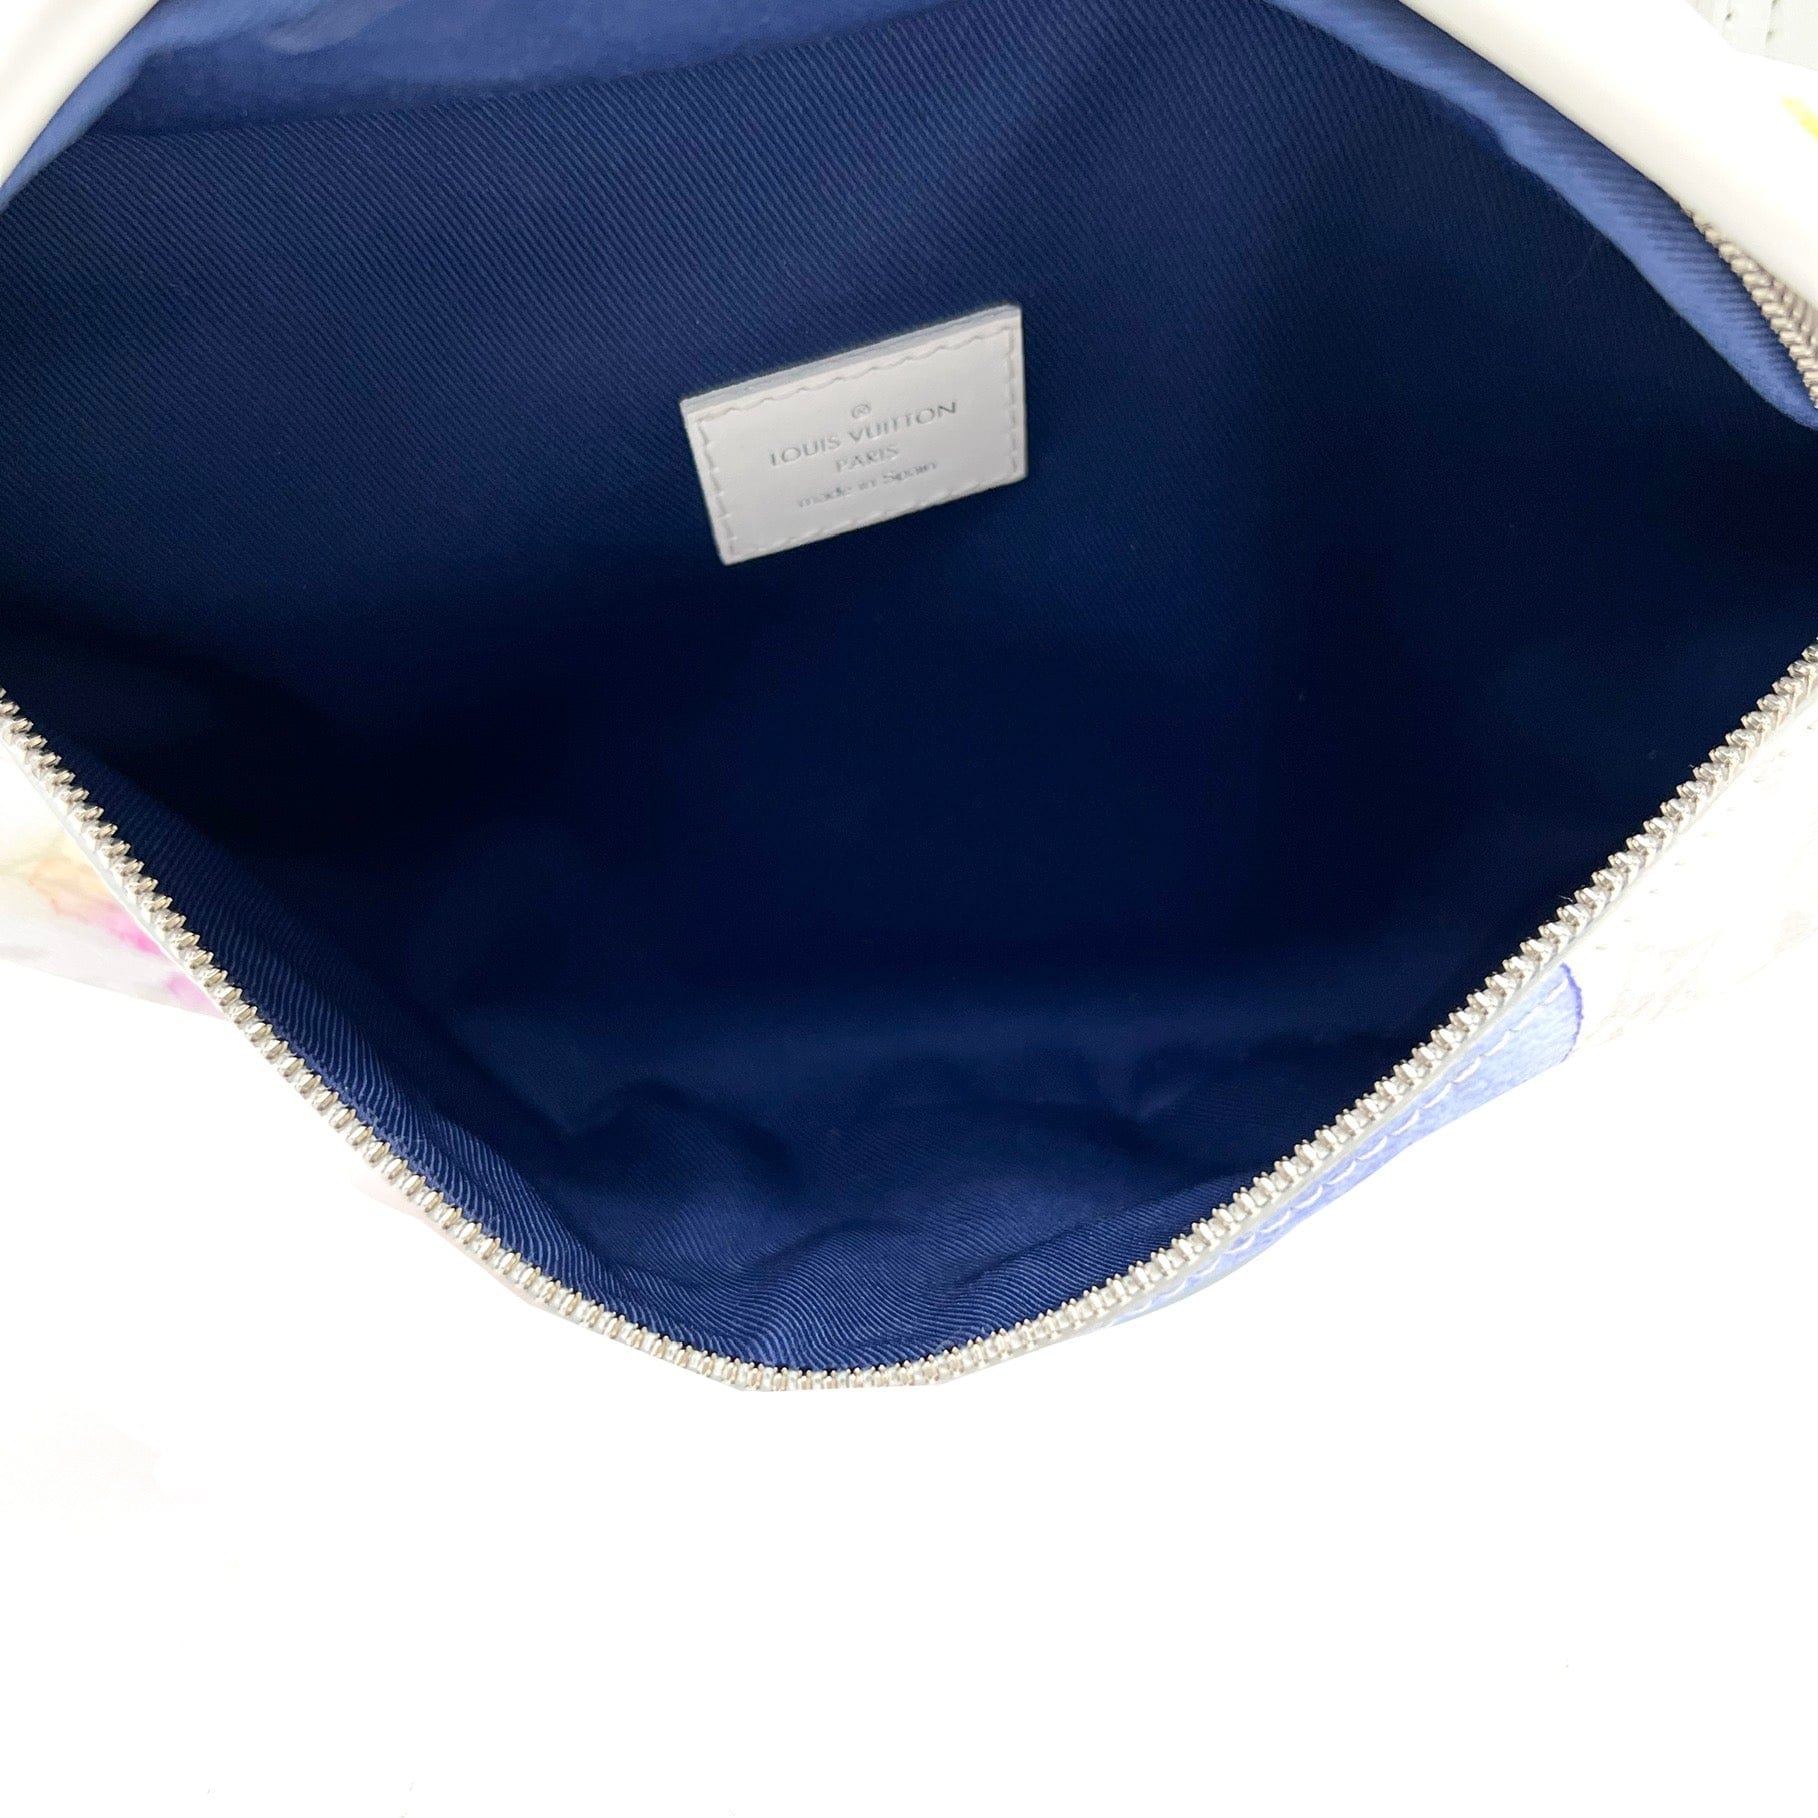 Louis Vuitton Watercolor Discovery Bumbag, Louis Vuitton Handbags